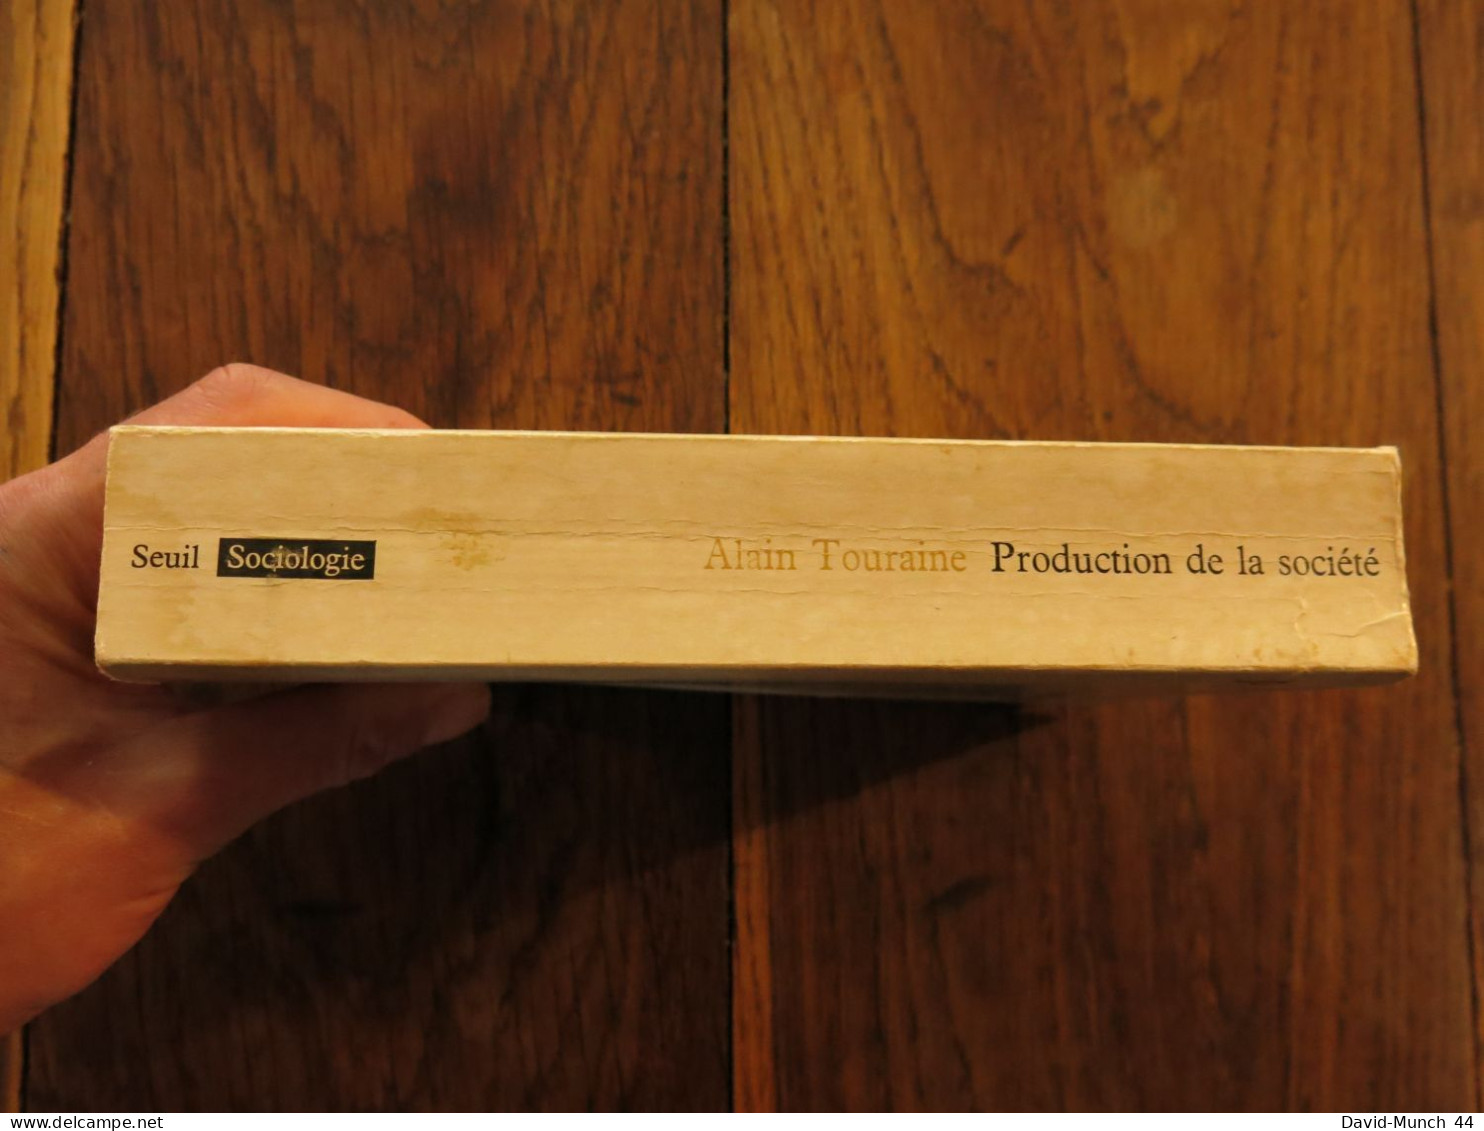 Production De La Société De Alain Touraine. Editions Du Seuil, Collection Sociologie, Paris. 1973 - Sociologie